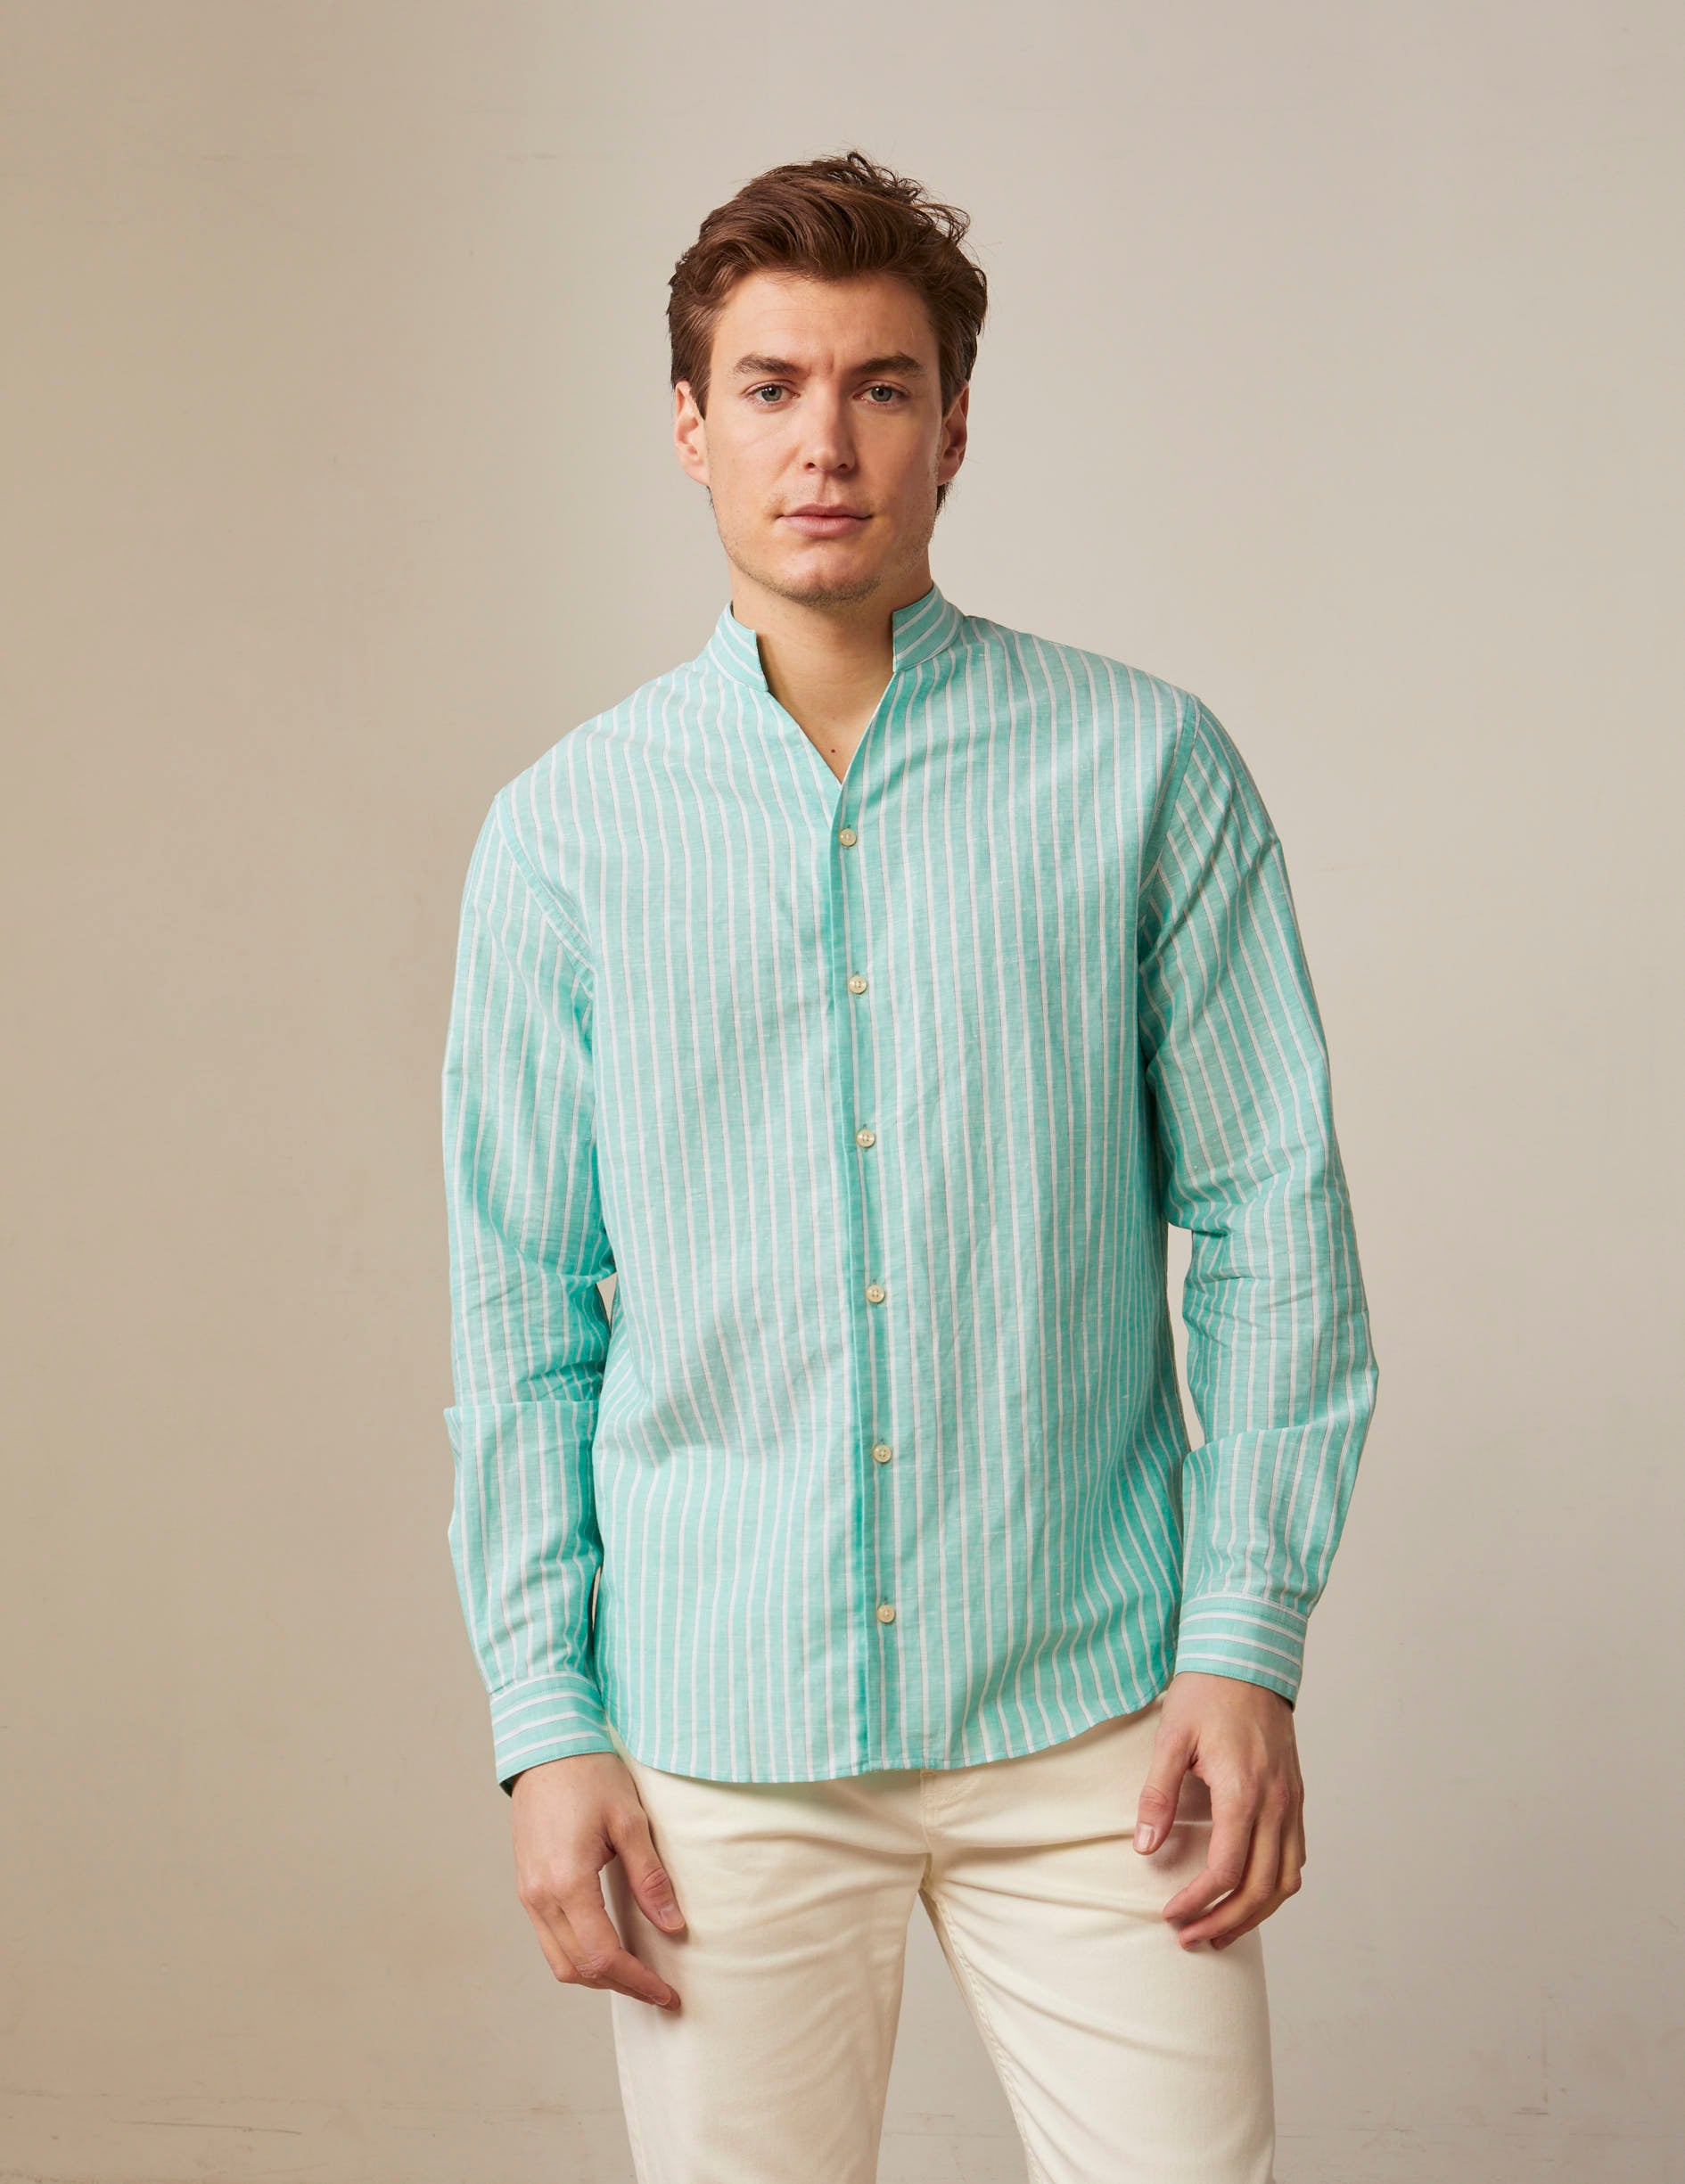 Carl striped shirt in light green linen - Linen - Open straight Collar